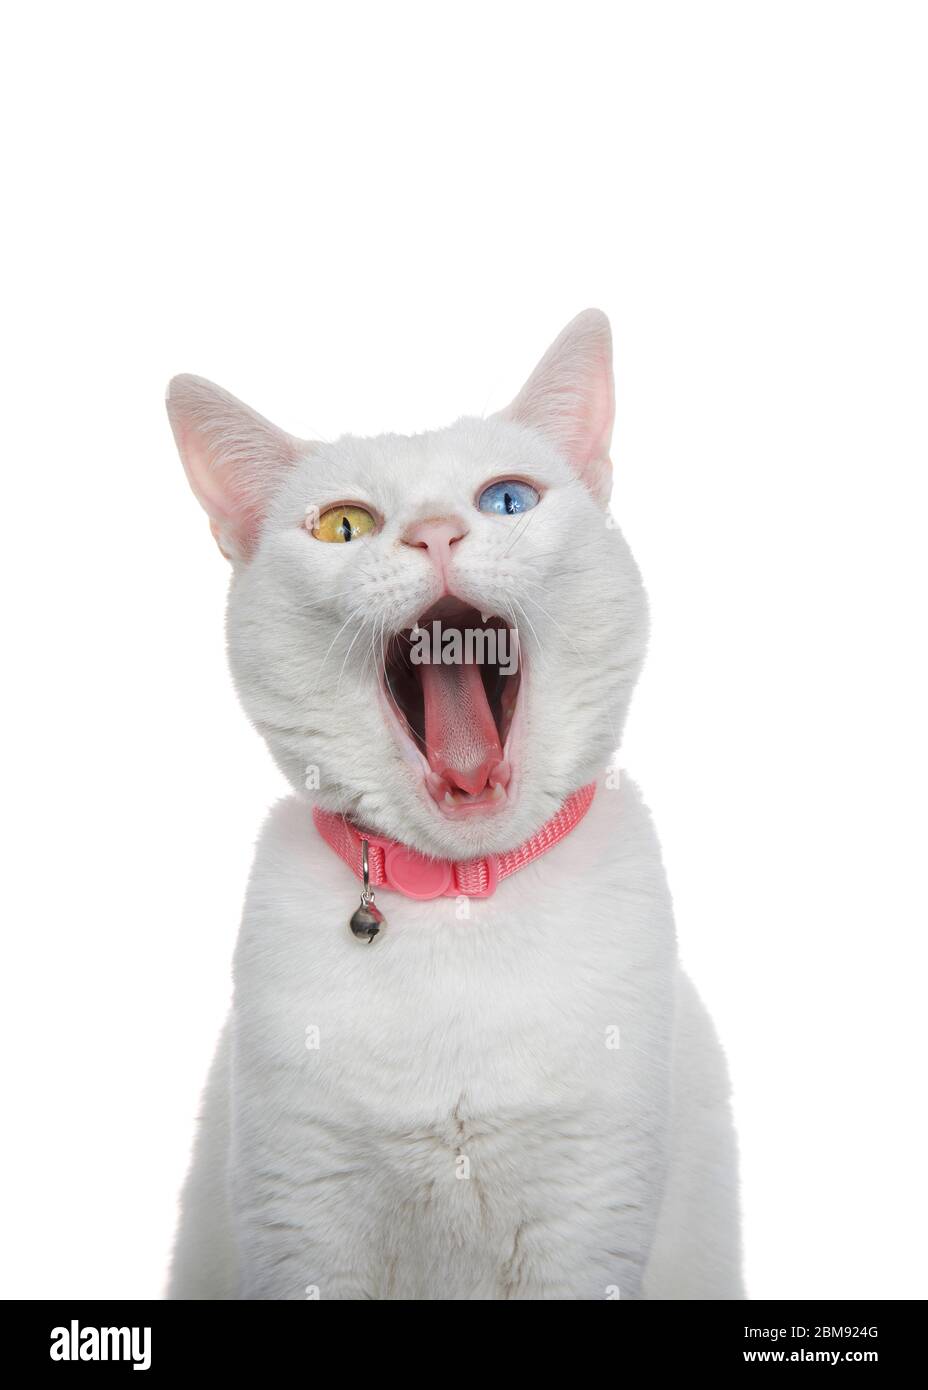 Primo piano ritratto di un gatto bianco con eterocromatia, occhi strani, con colletto rosa con campana. Imbardata con occhi aperti, isolata su bianco. Foto Stock